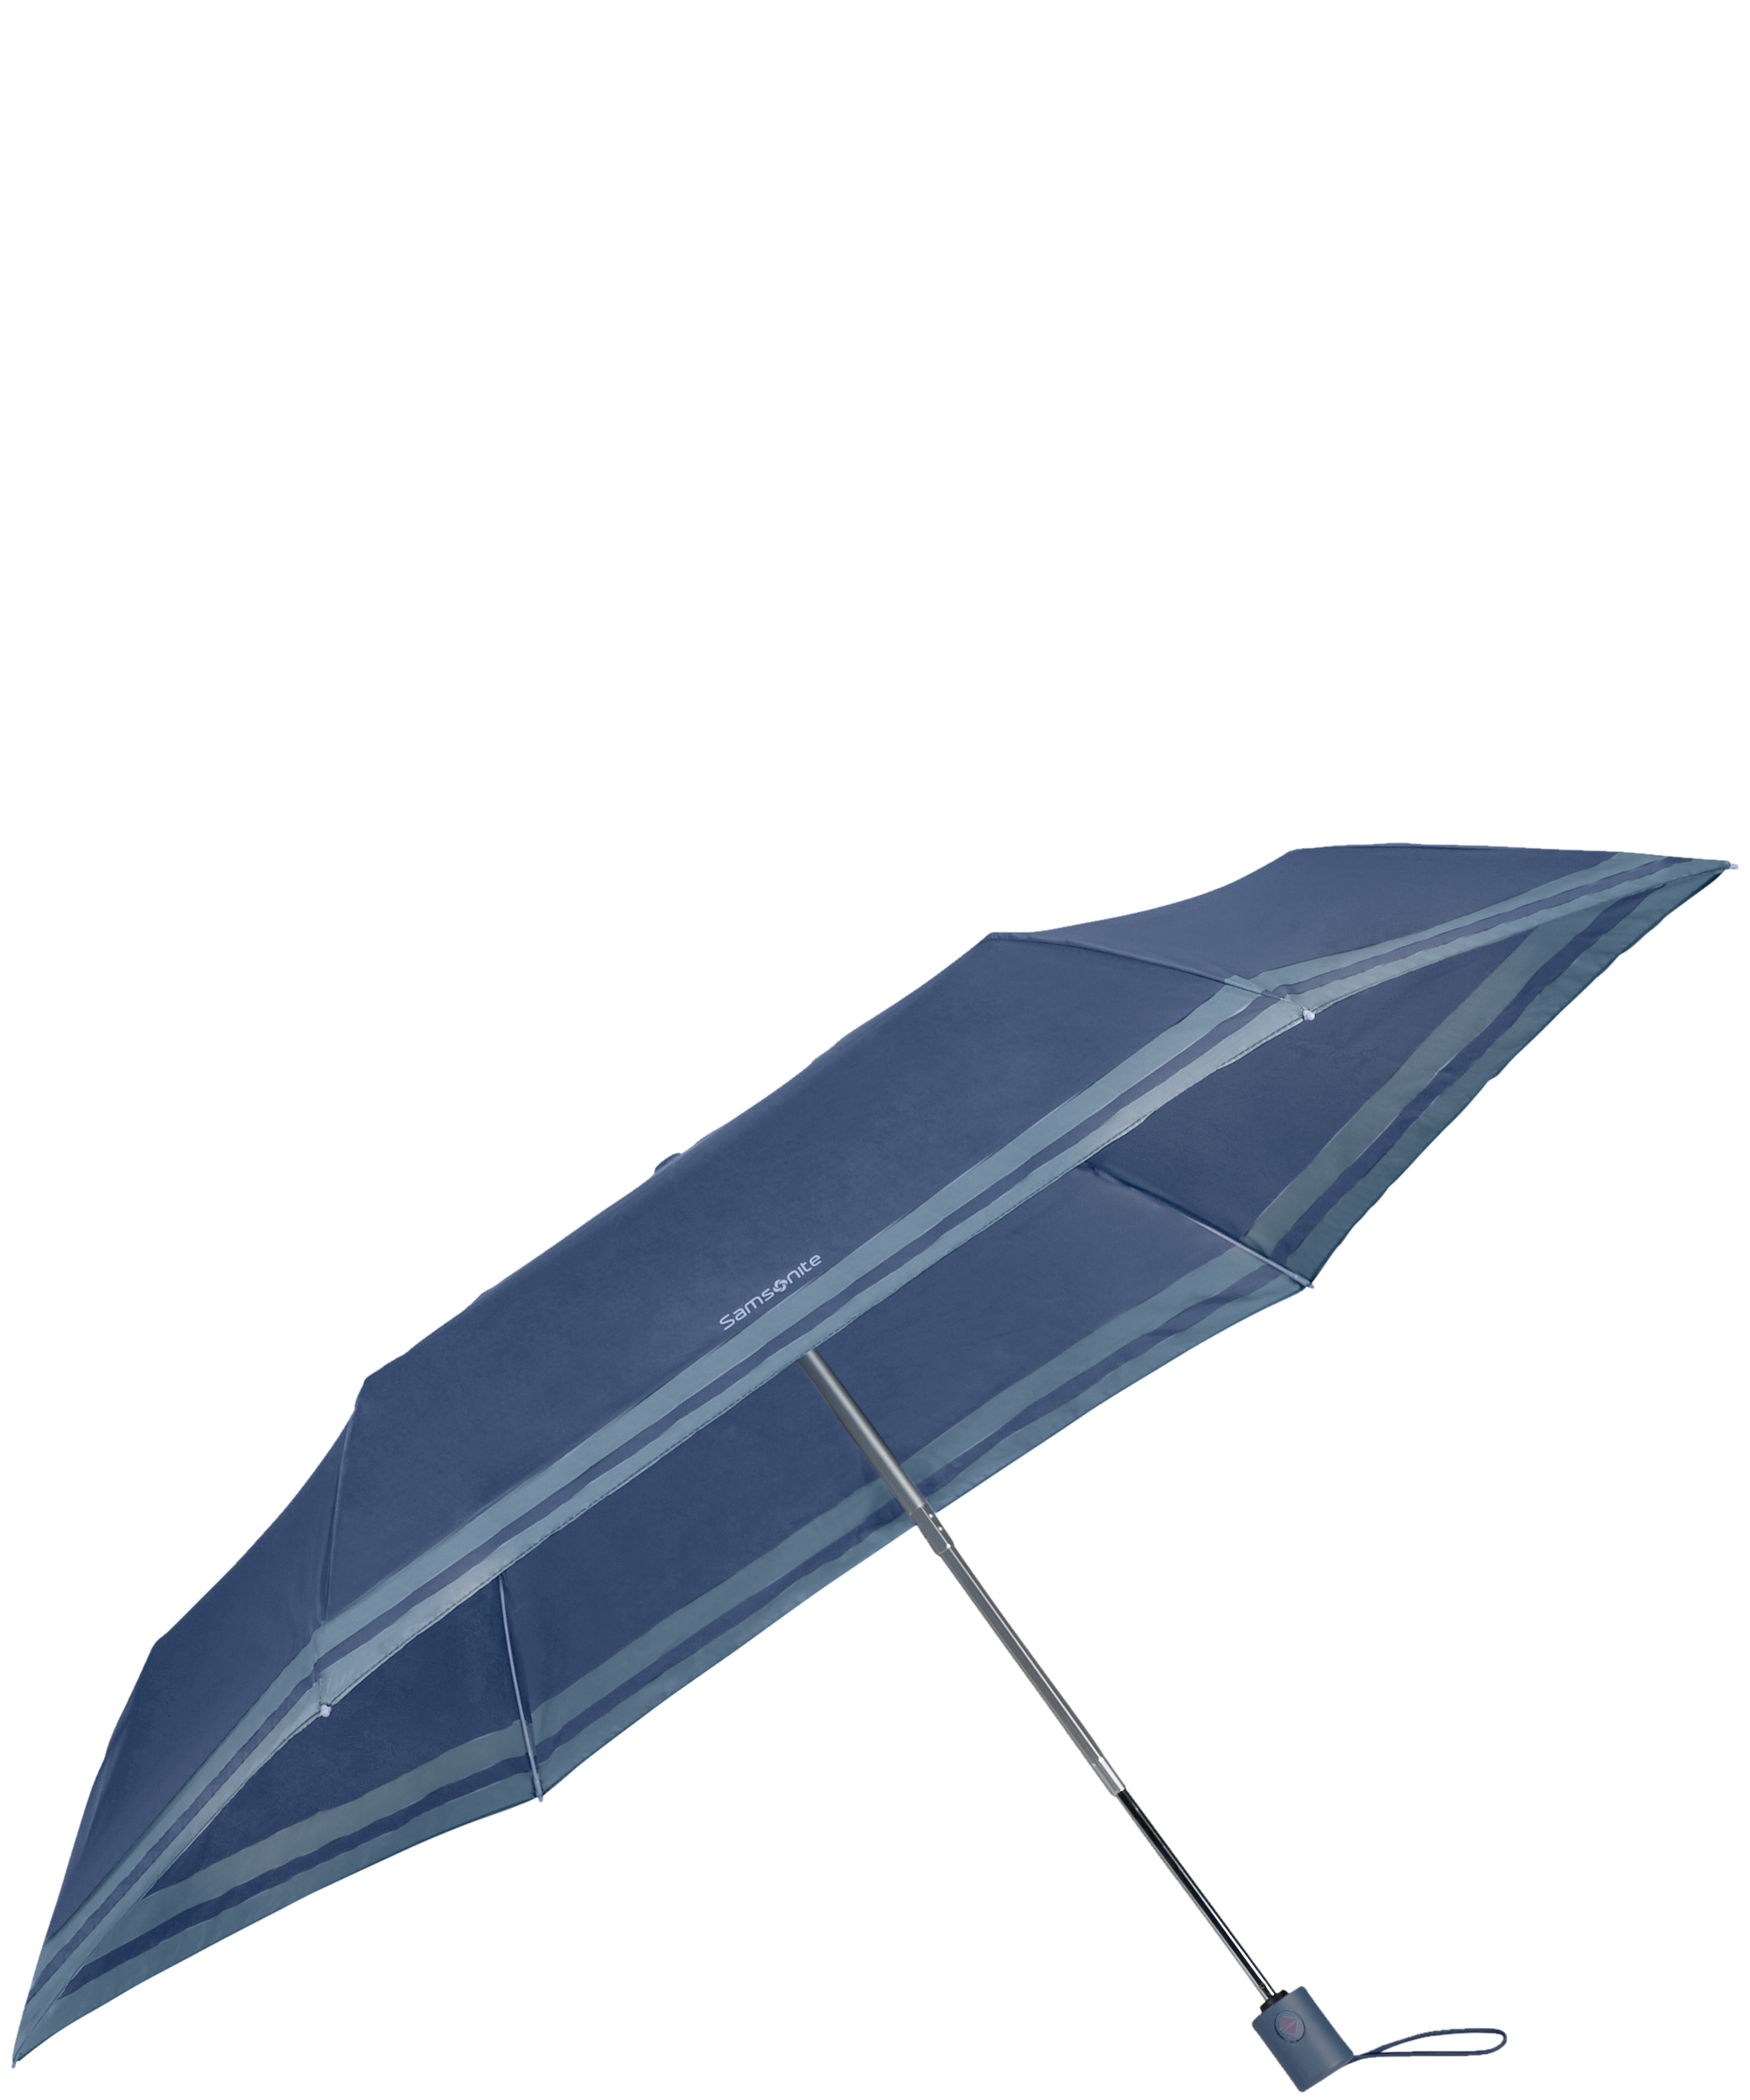 Parapluie Canne Lightdrop Pliant Léger et Compact 16 cm Bleu Synthétique Samsonite en coloris Bleu Femme Accessoires Parapluies 